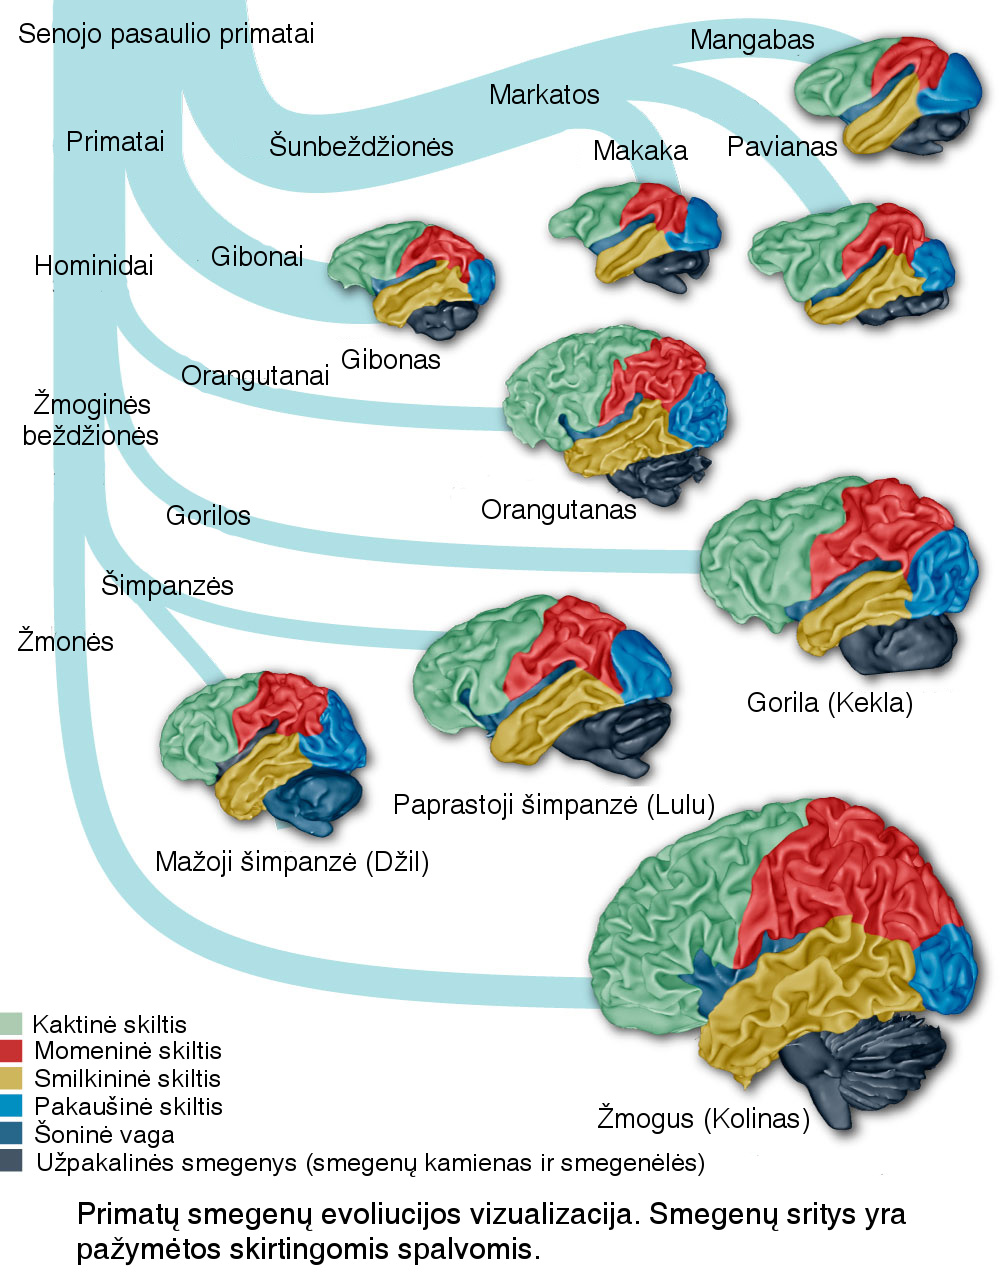 primatu smegenu evoliucija